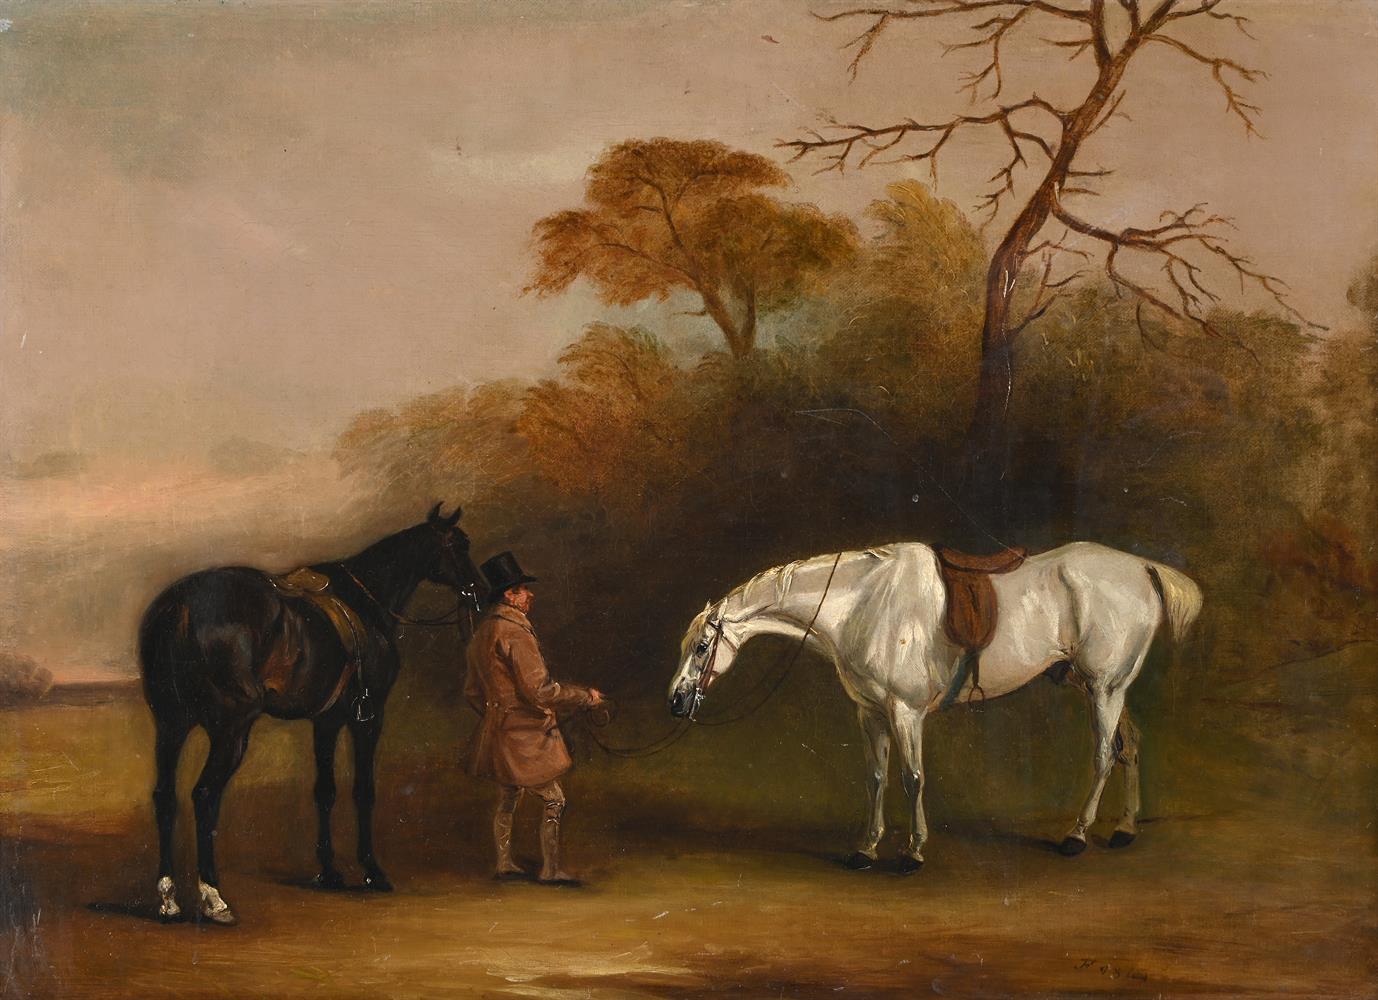 JOHN FERNELEY JNR. (BRITISH 1815-1862), A GROOM WITH A DARK BAY